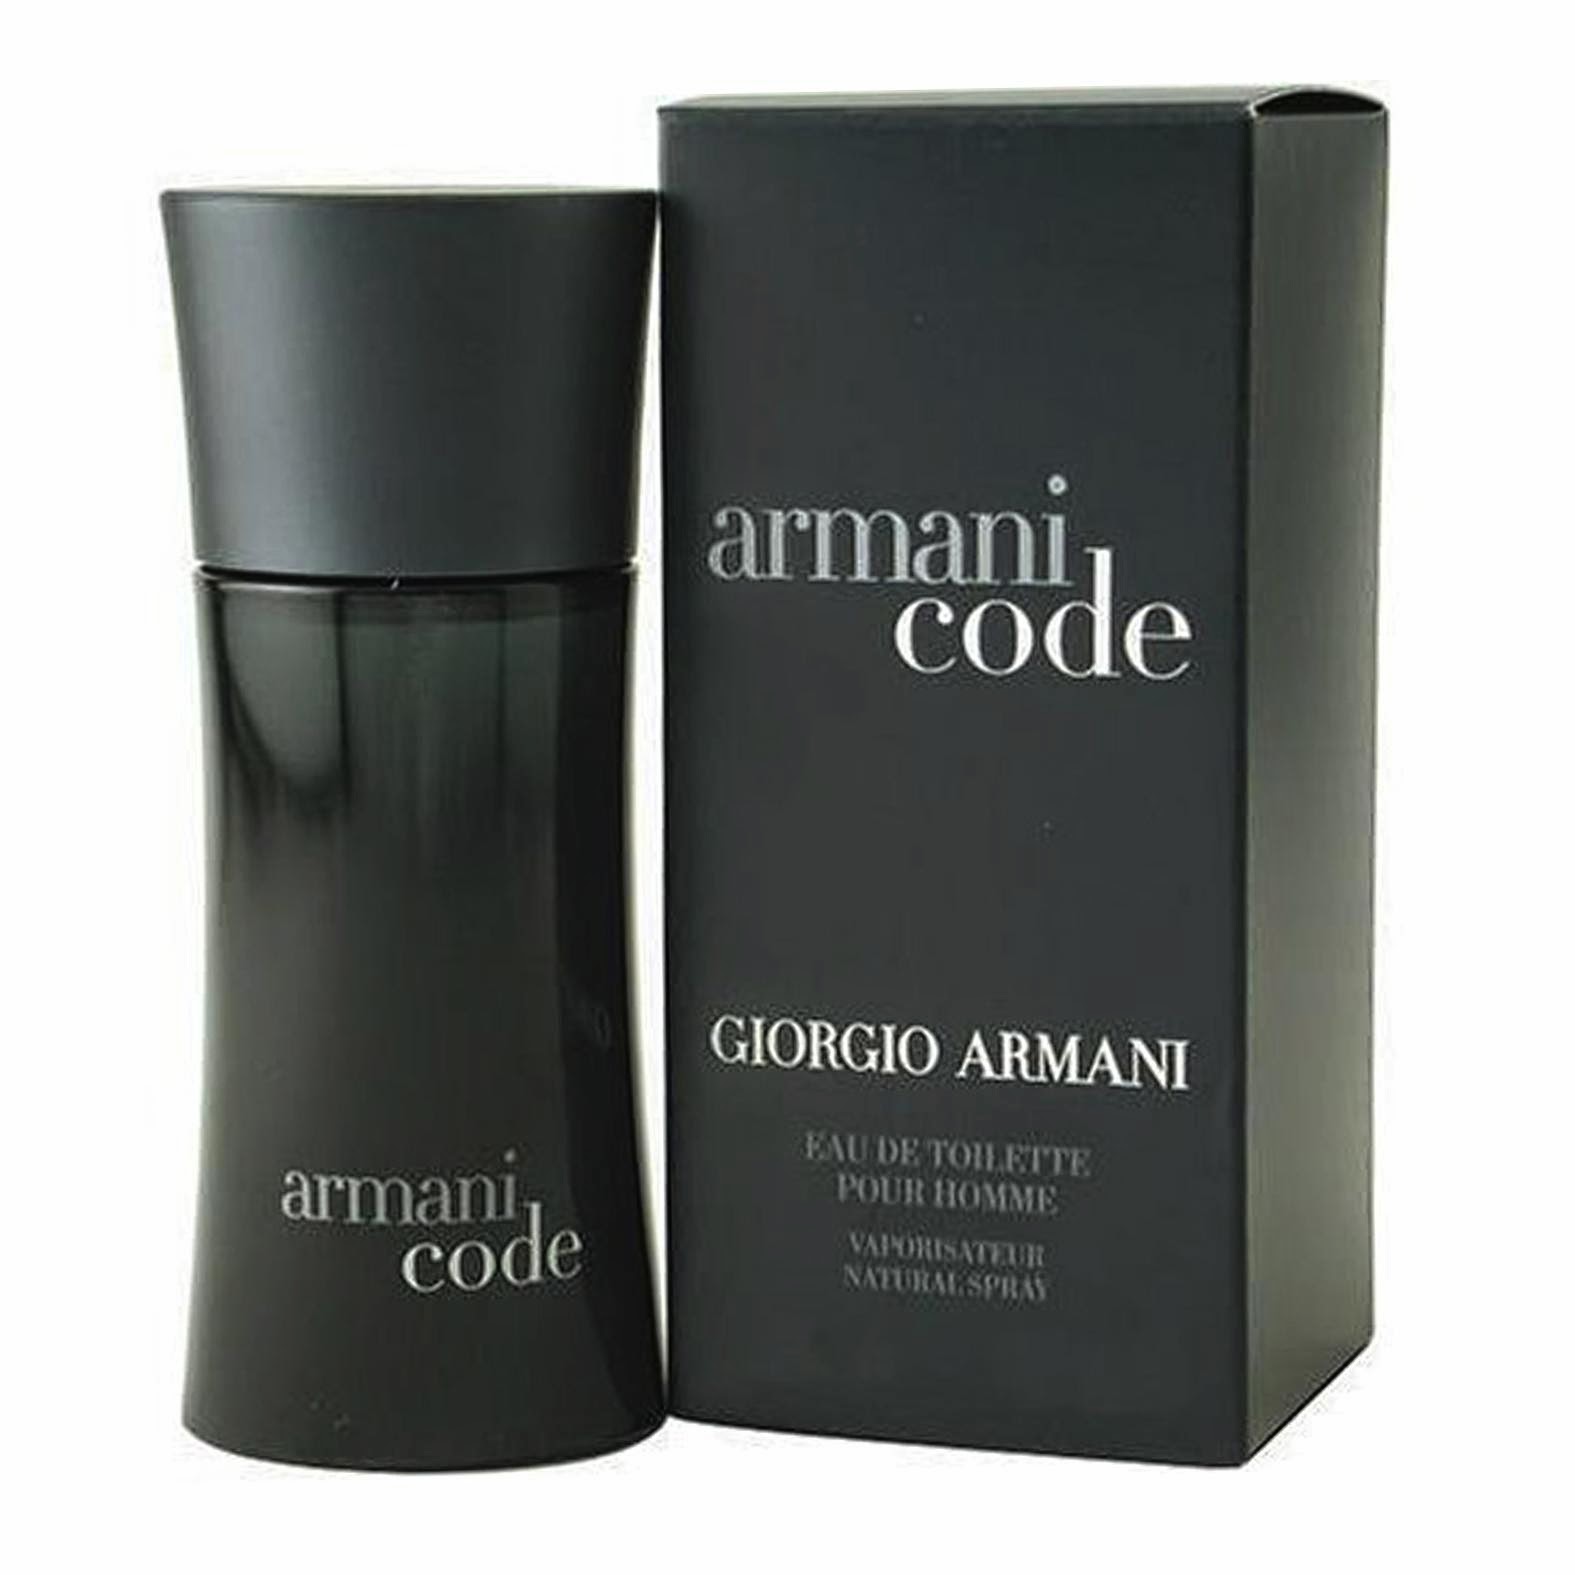 Armani Code from Giorgio Armani